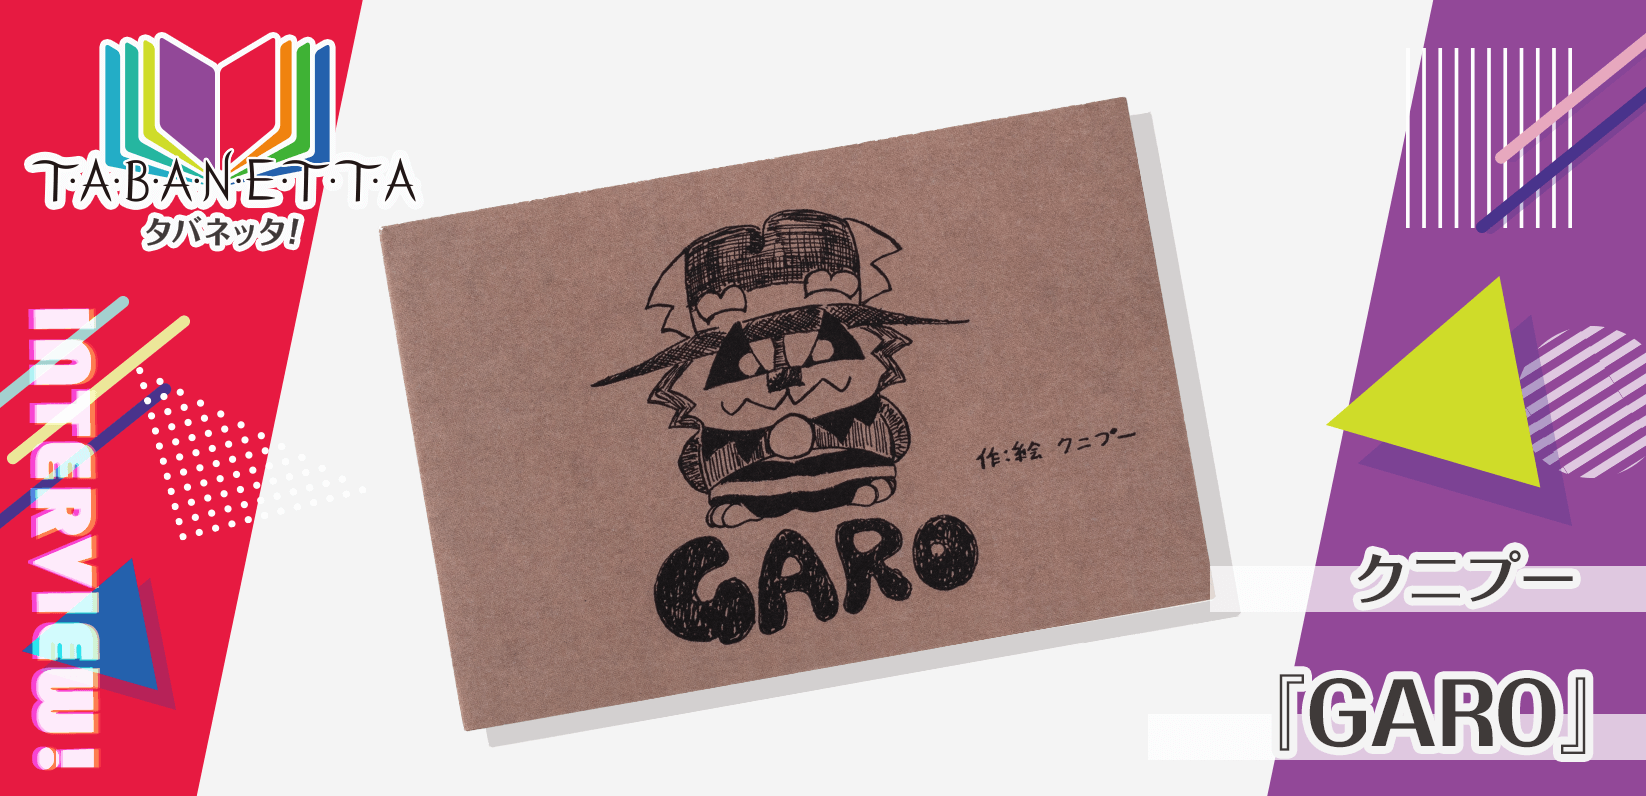 クニプ―様製作のオリジナルカードブック『GARO』